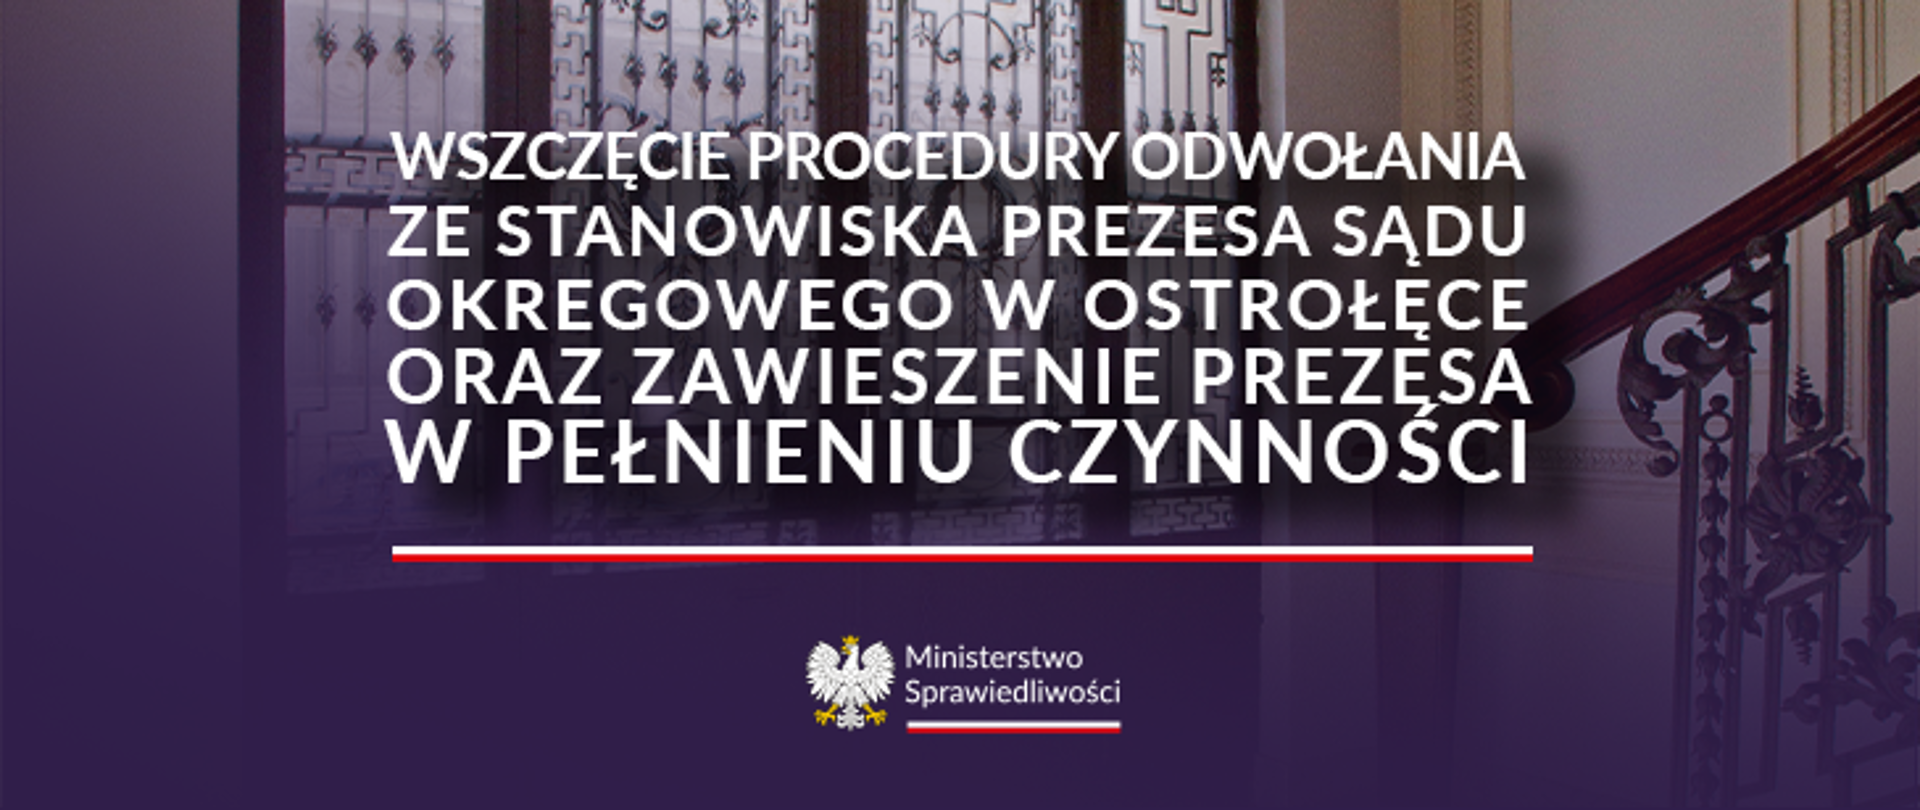 Wszczęcie procedury odwołania ze stanowiska Prezesa Sądu Okręgowego w Ostrołęce oraz zawieszeniu Prezesa w pełnieniu czynności